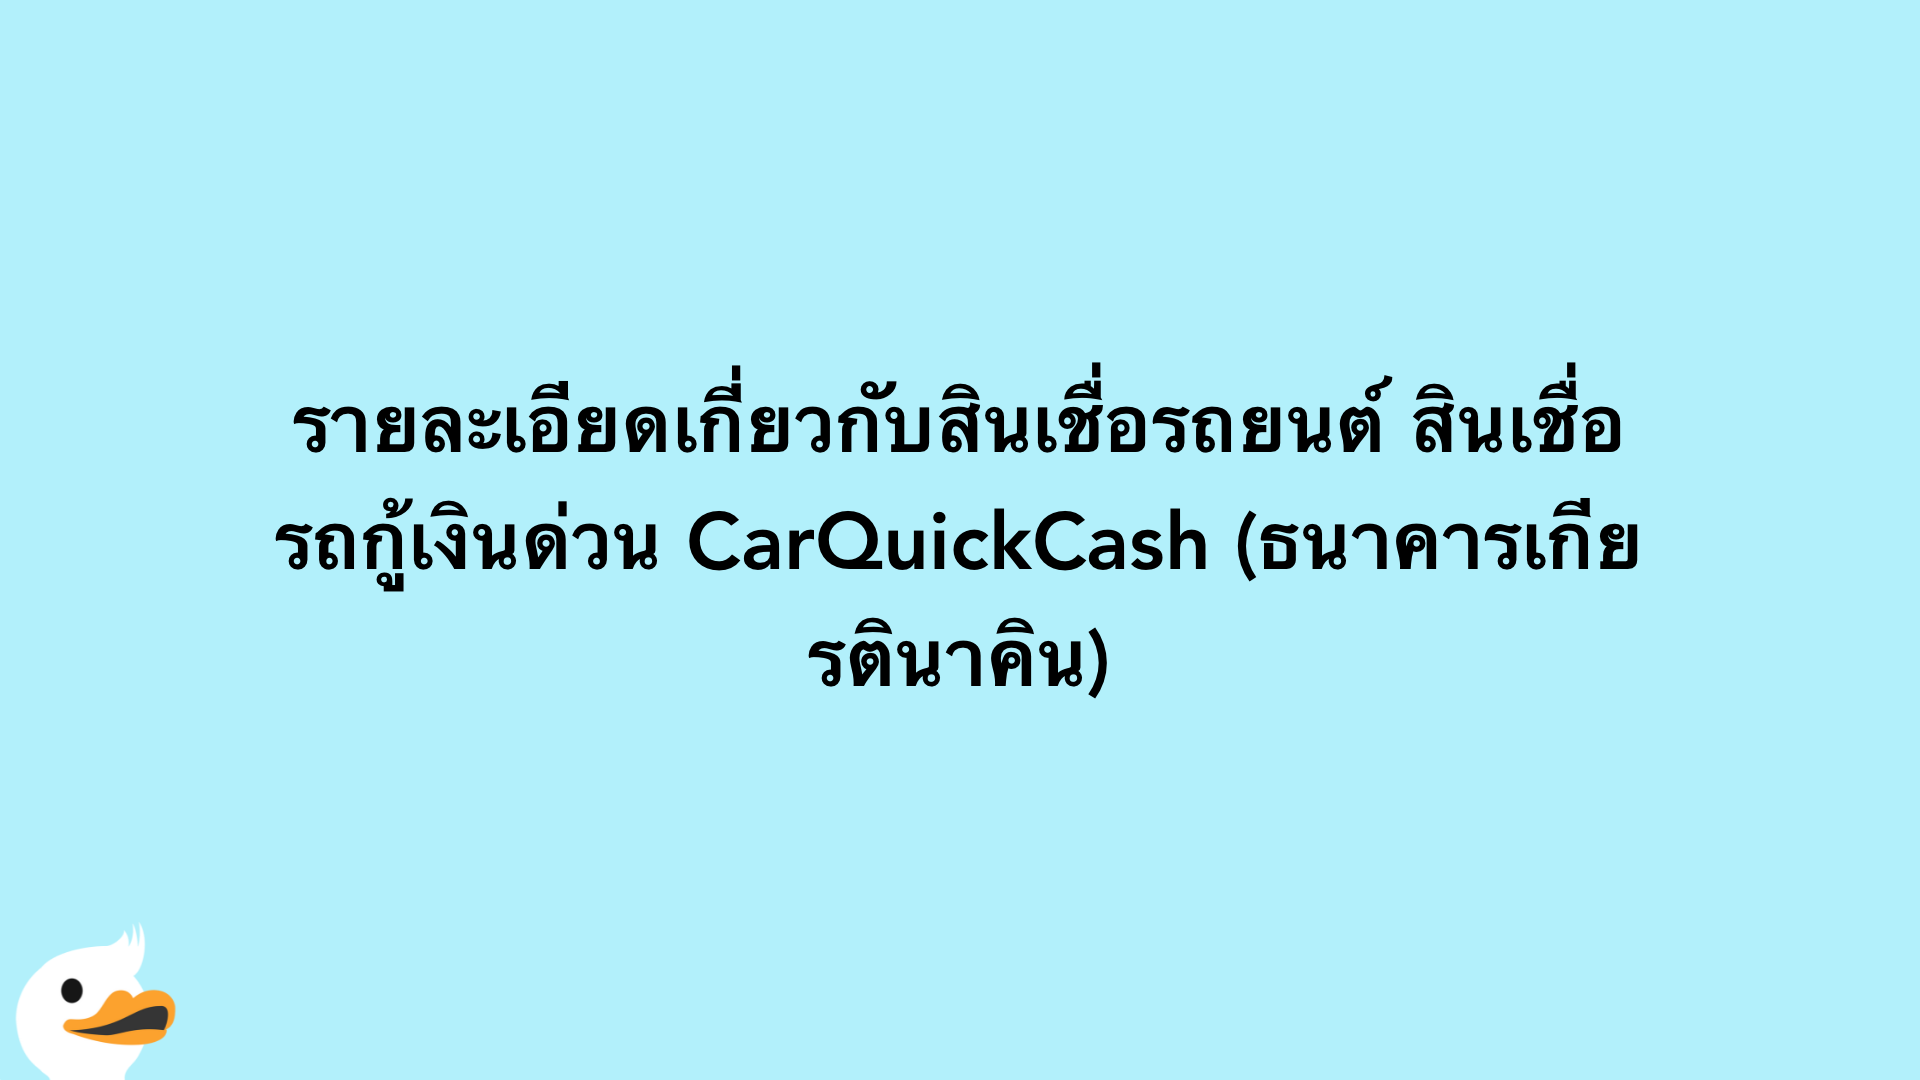 รายละเอียดเกี่ยวกับสินเชื่อรถยนต์ สินเชื่อรถกู้เงินด่วน CarQuickCash (ธนาคารเกียรตินาคิน)